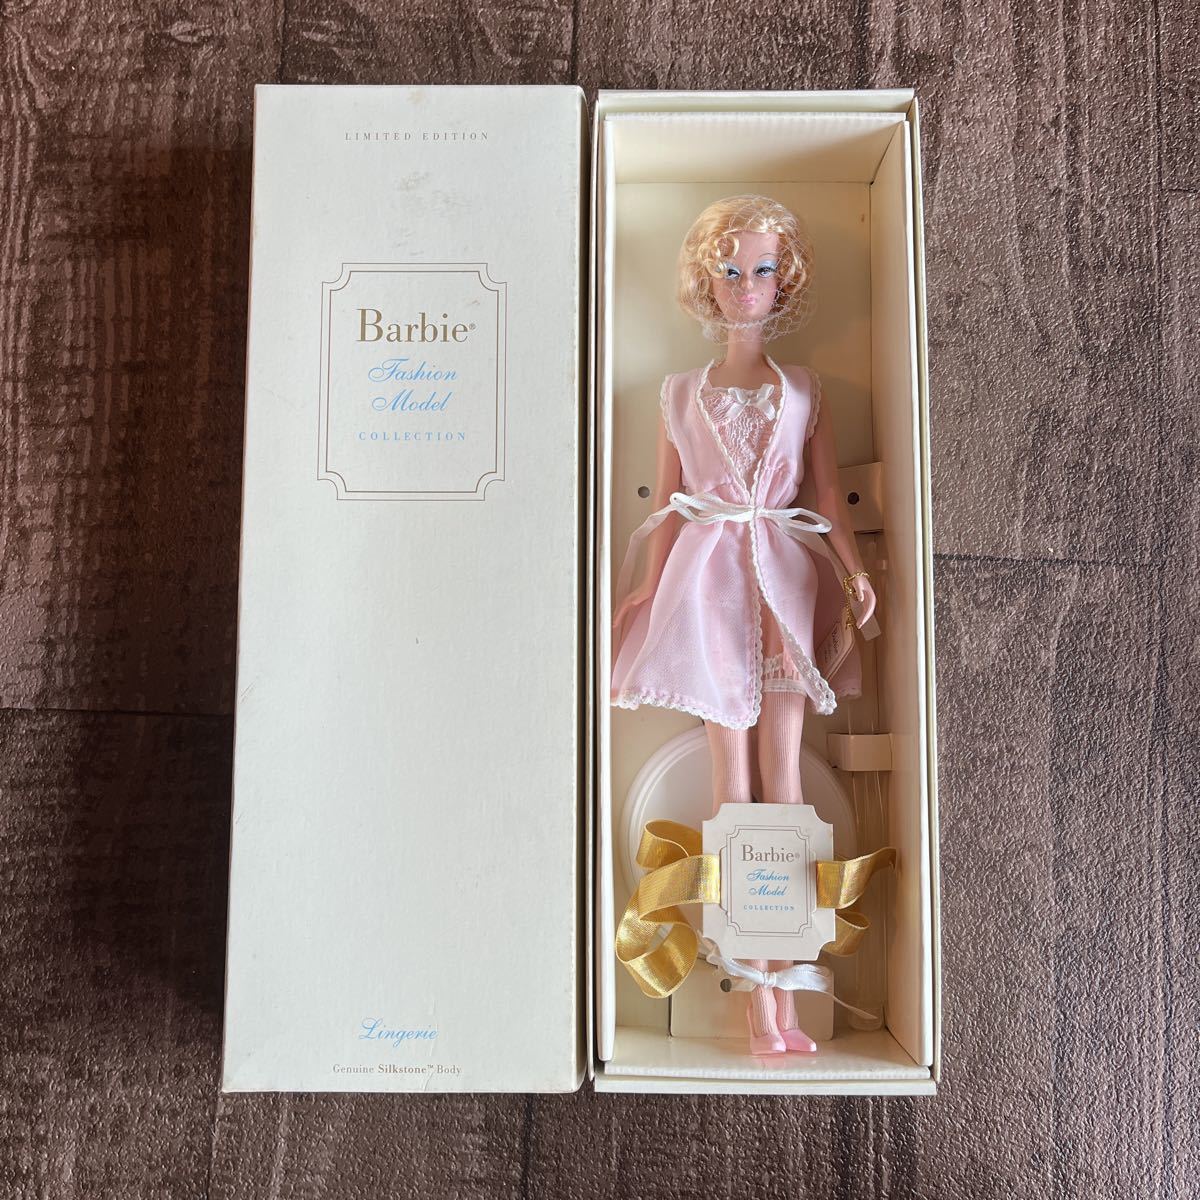 3462)【人形/ドール】Barbie(バービー) ファッションモデルコレクション[白/ホワイト/ランジェリー/リミテッドエディション]現状品 